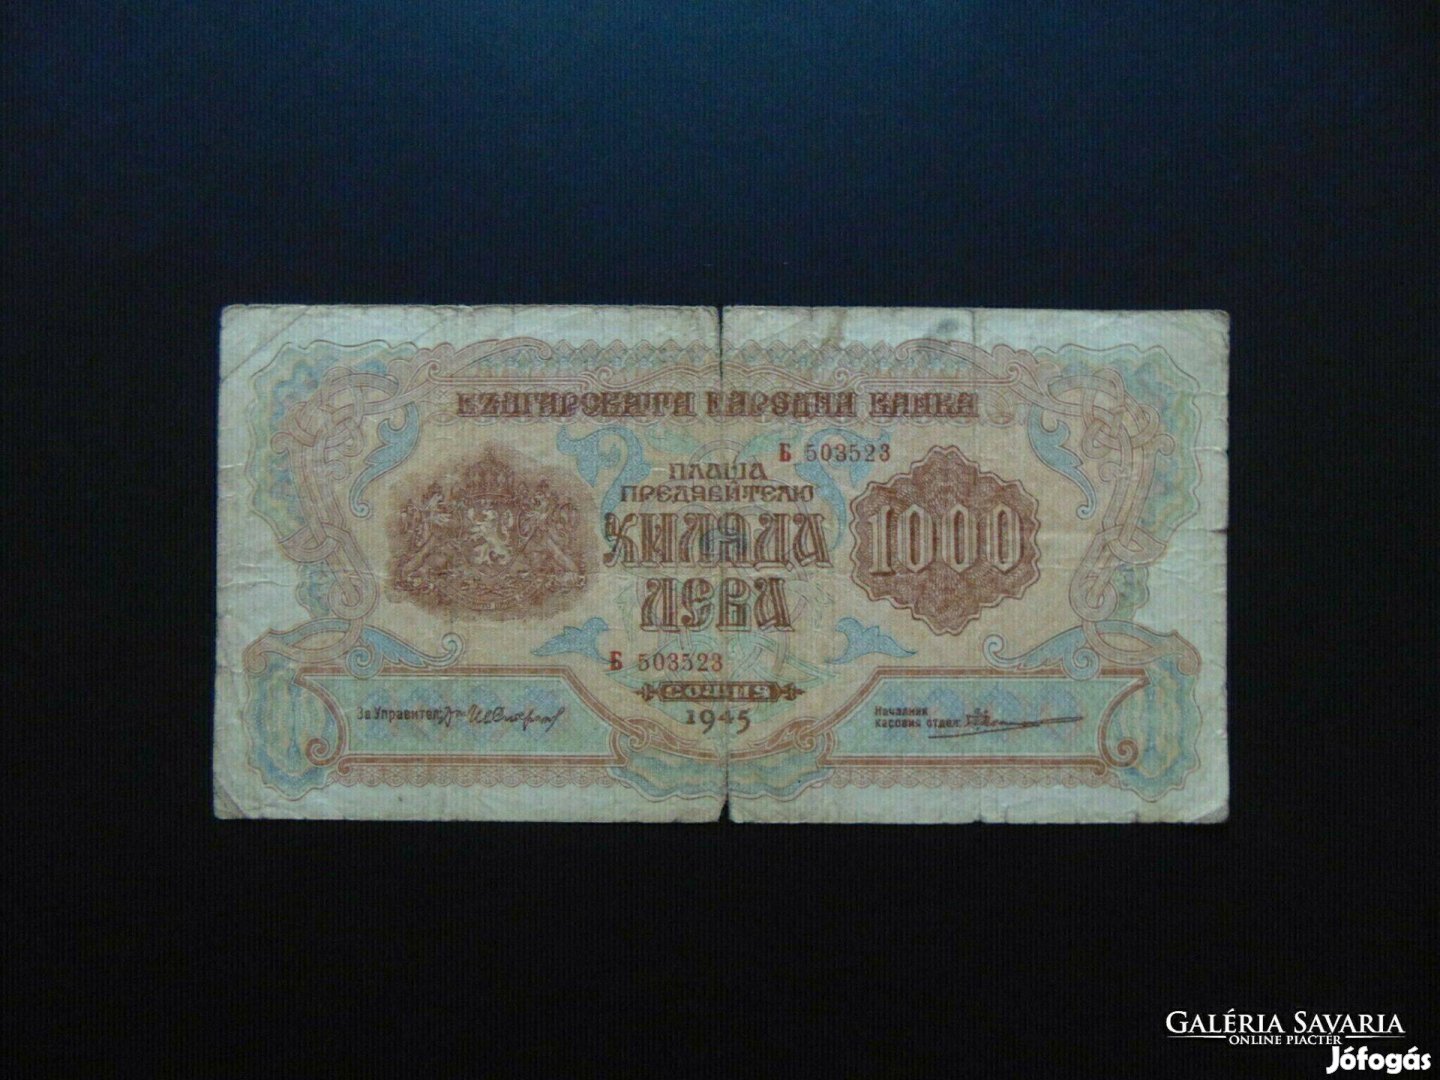 Bulgária 1000 leva bankjegy 1945